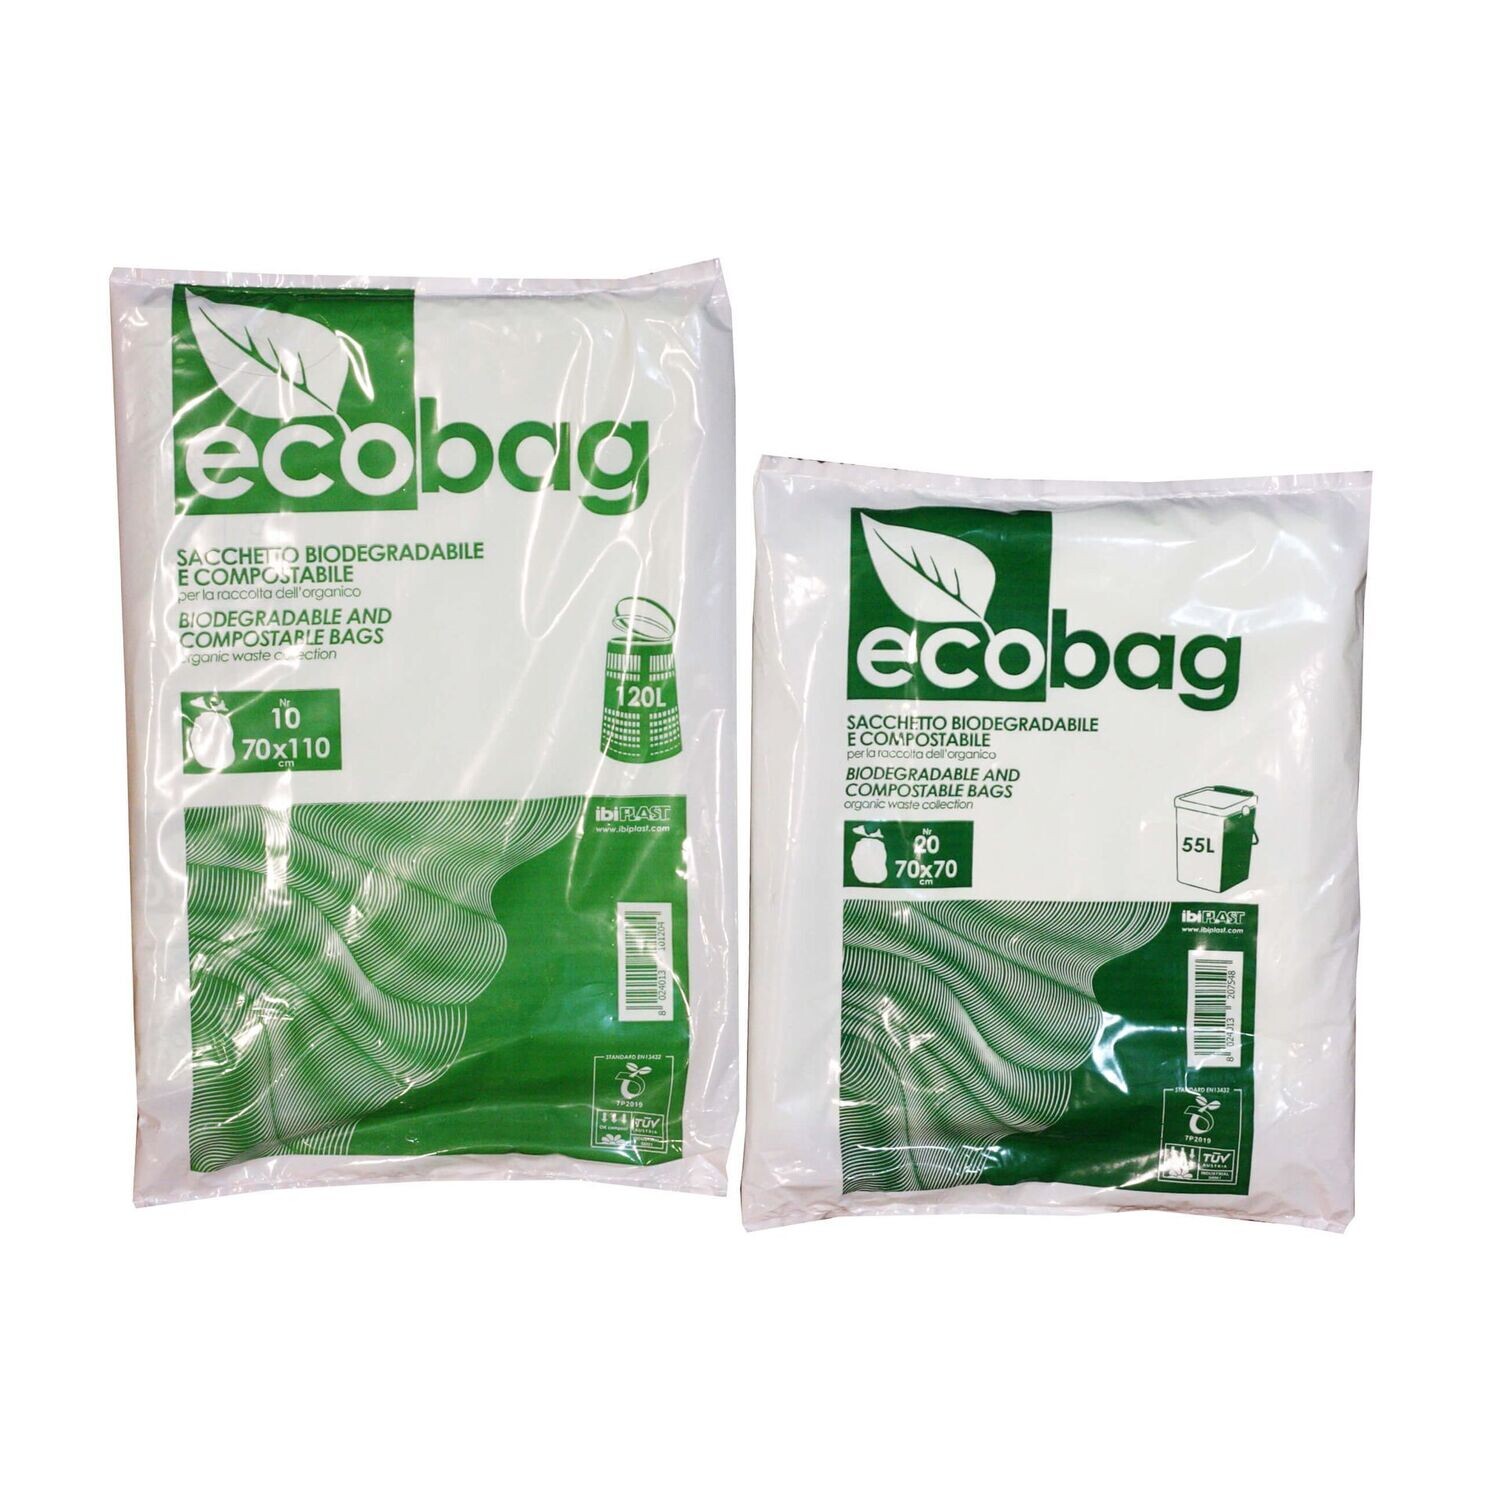 Sacchetti biodegradabili per umido - Formato convenienza